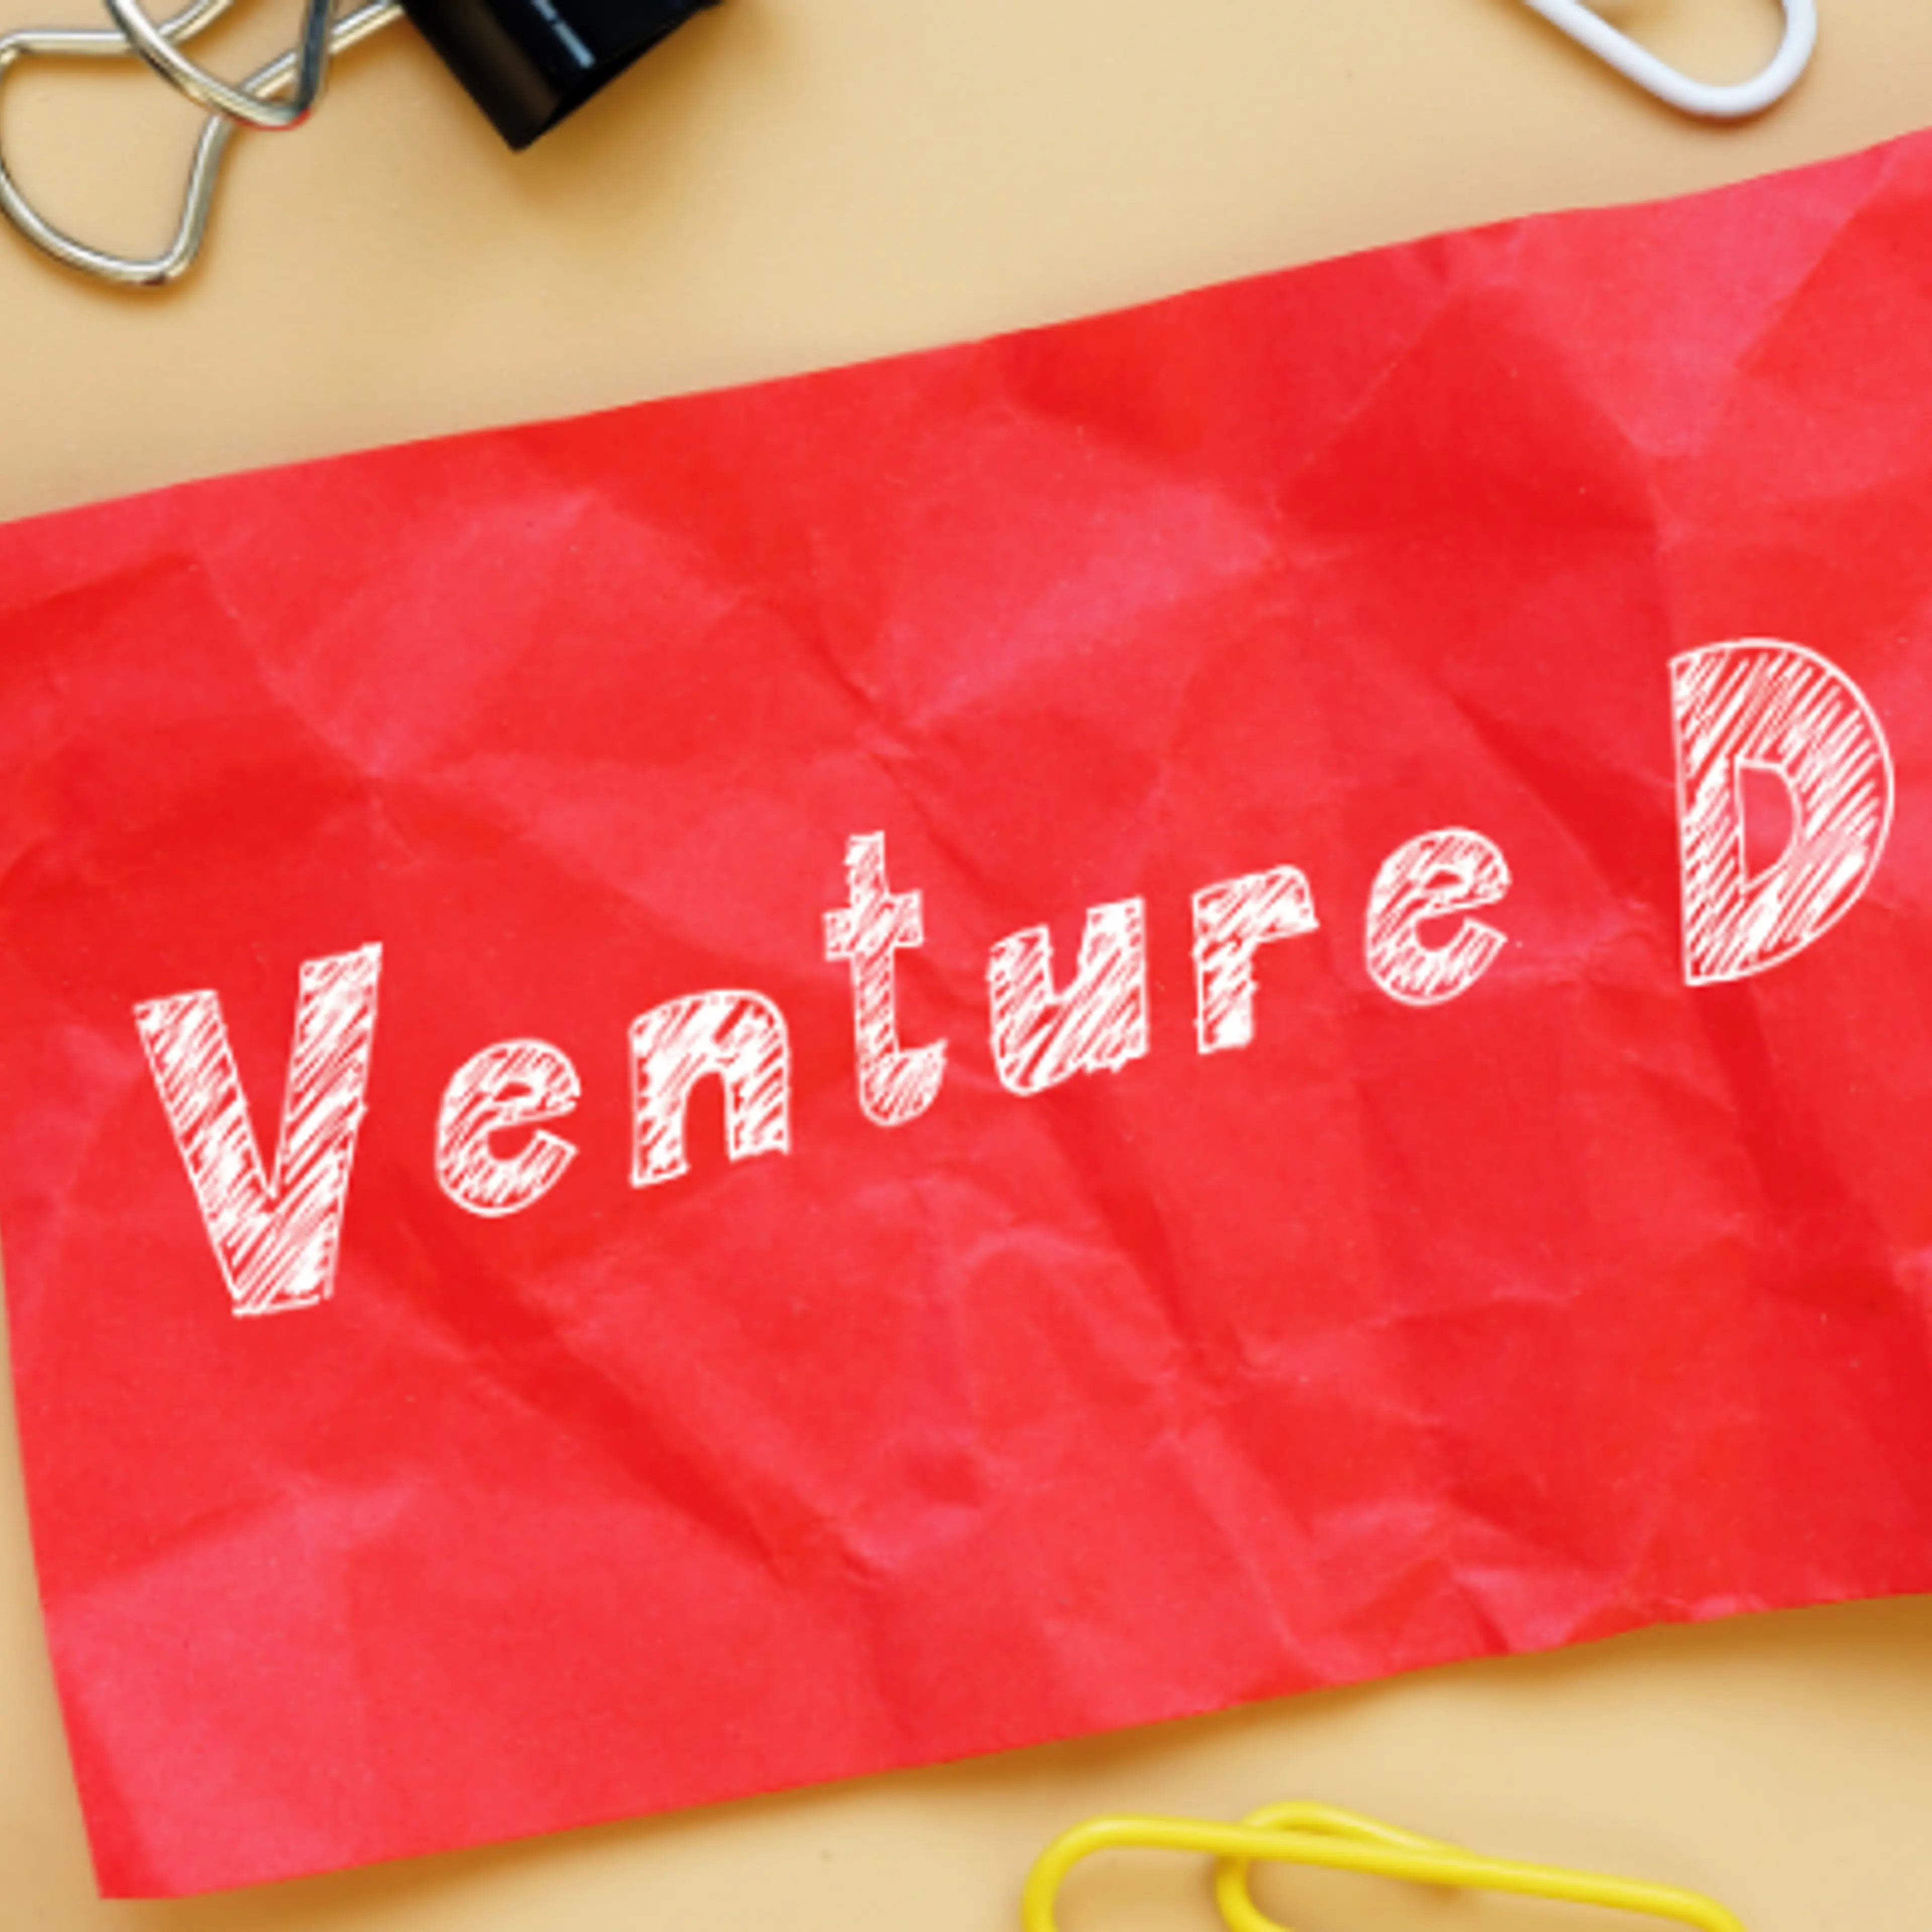 Stride Ventures closes third fund at $165M